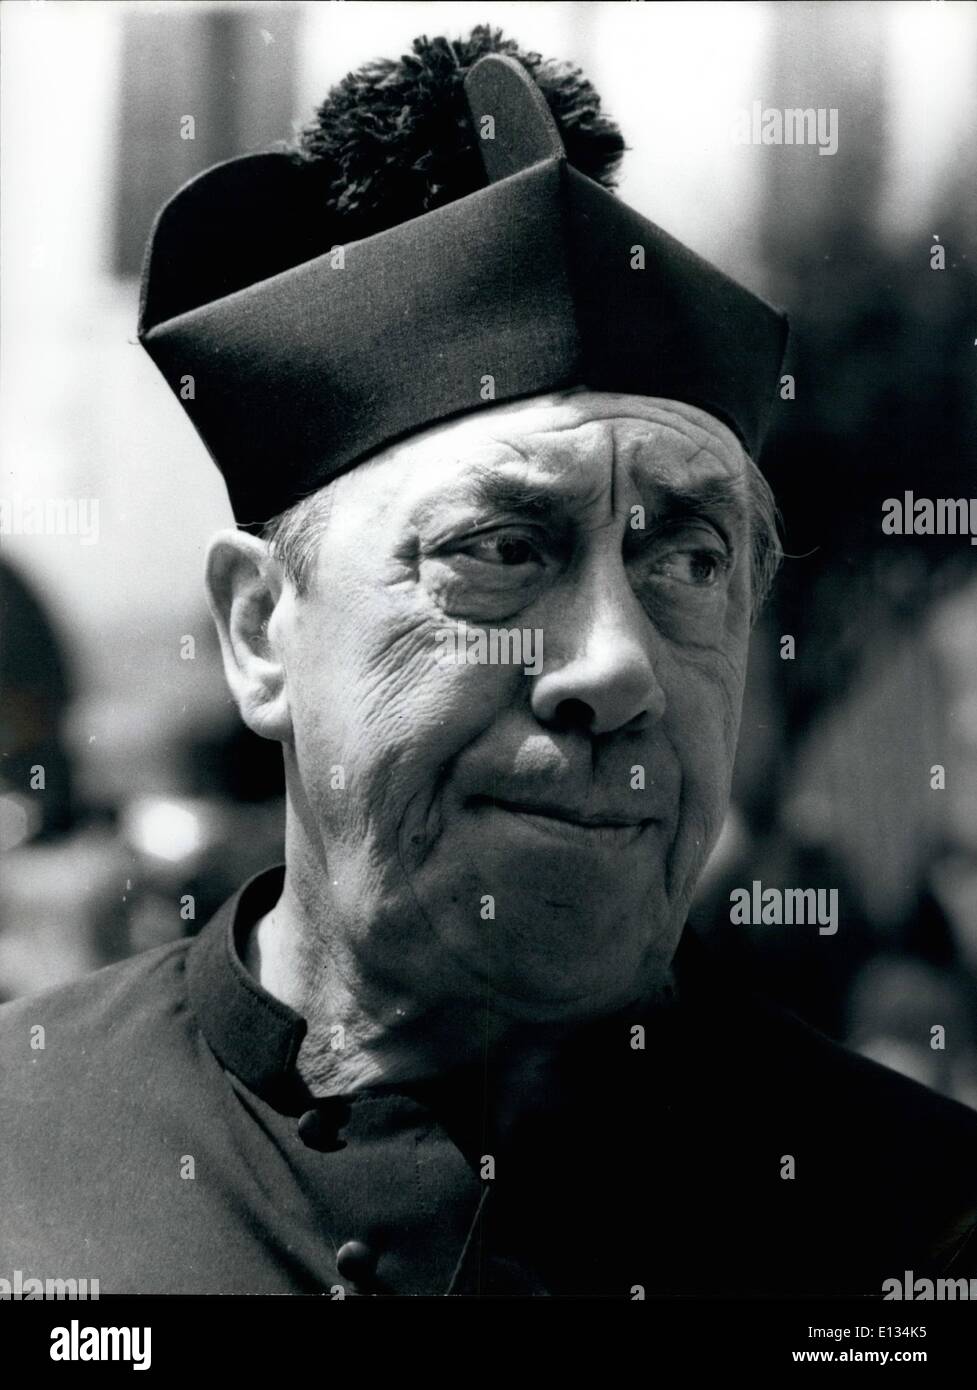 Le 28 février 2012 - Les conflits et les affrontements entre l'parrish prêtre Don Camillo et le maire communiste Peppone continuer dans Banque D'Images